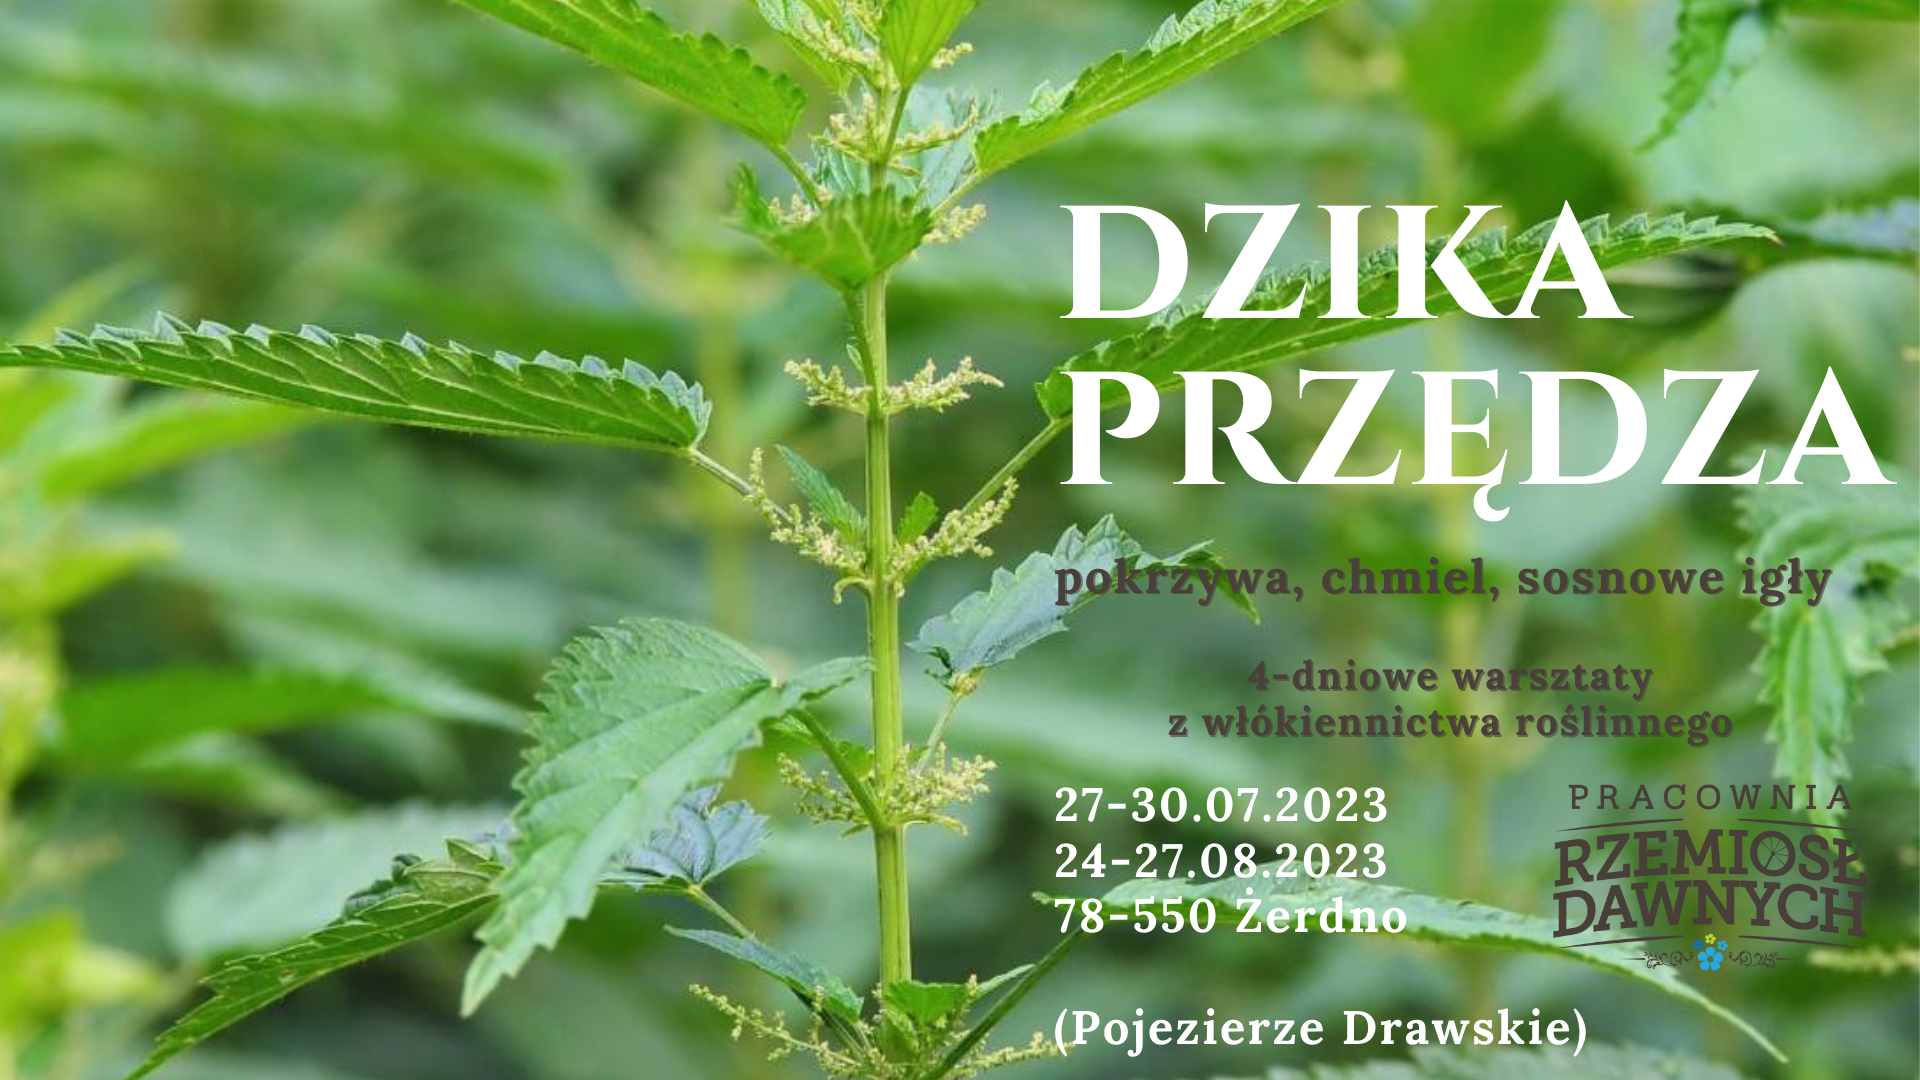 Dzika Przędza 2023- warsztaty. Włókno z pokrzywy, chmielu i innych roślin włóknistych.